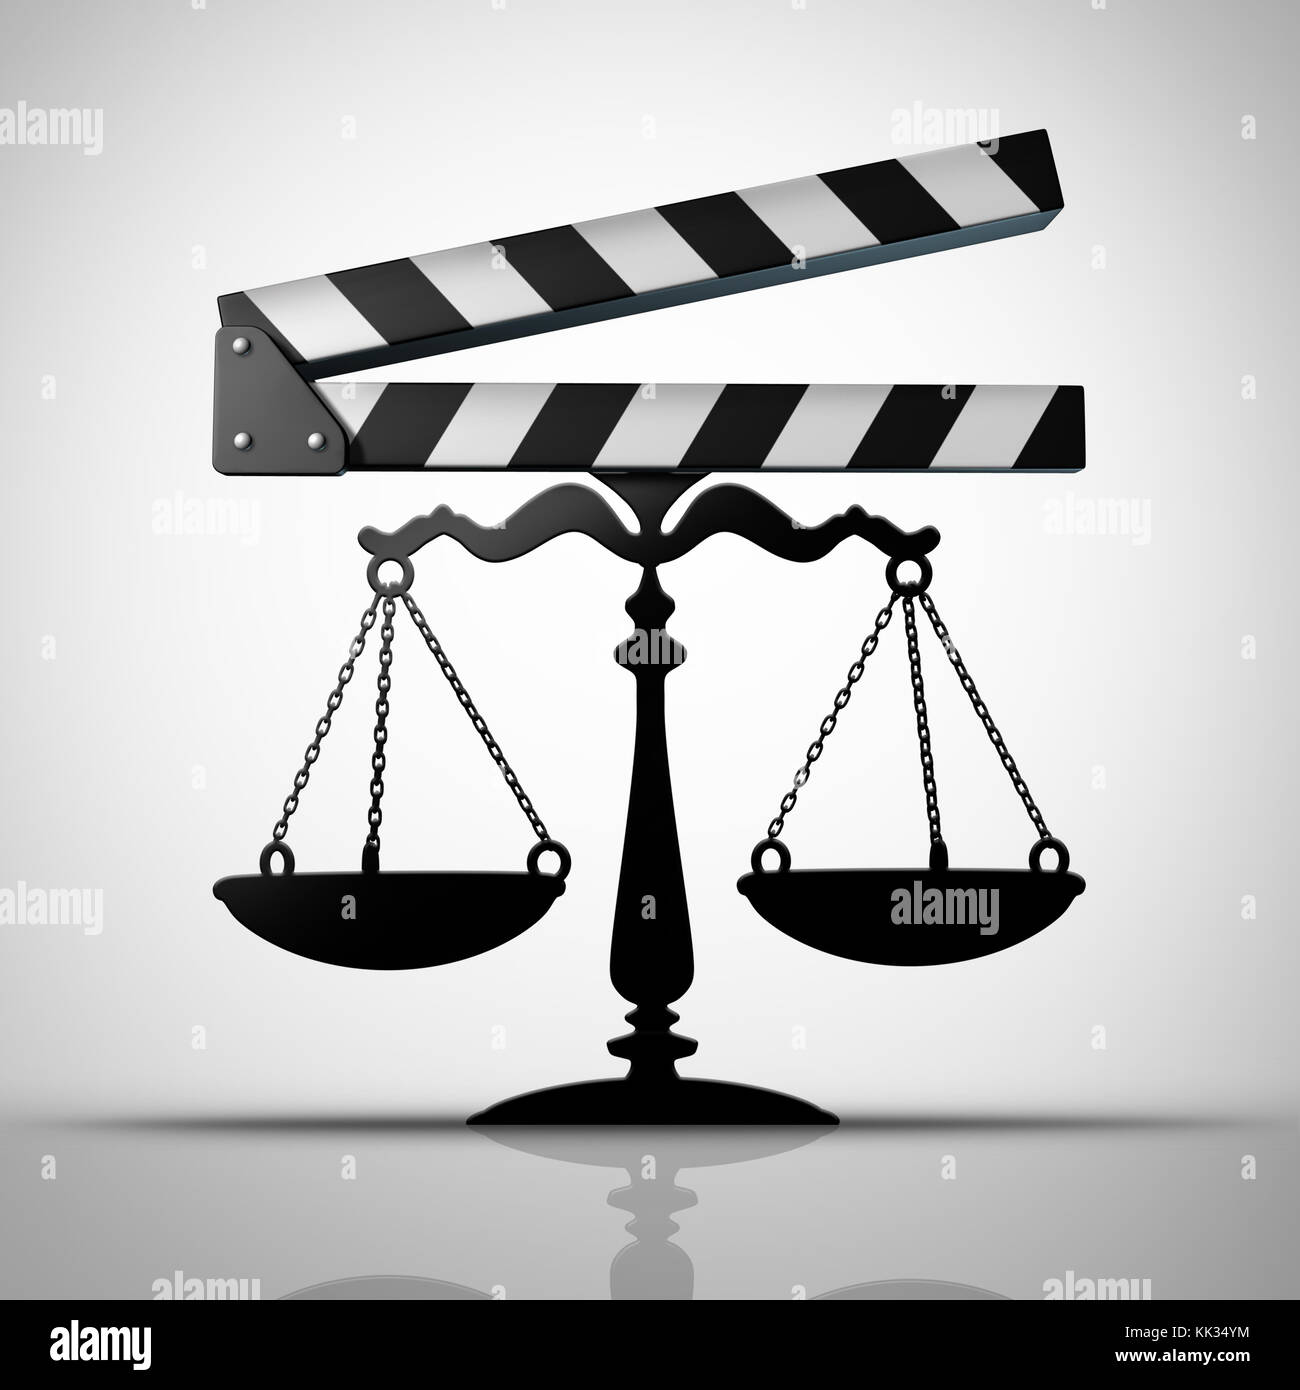 Diritto di intrattenimento e media della giustizia o della tv e dei film di negoziazione del contratto come una industria cinematografica slateboard o film slate conformata come una scala di giustizia. Foto Stock